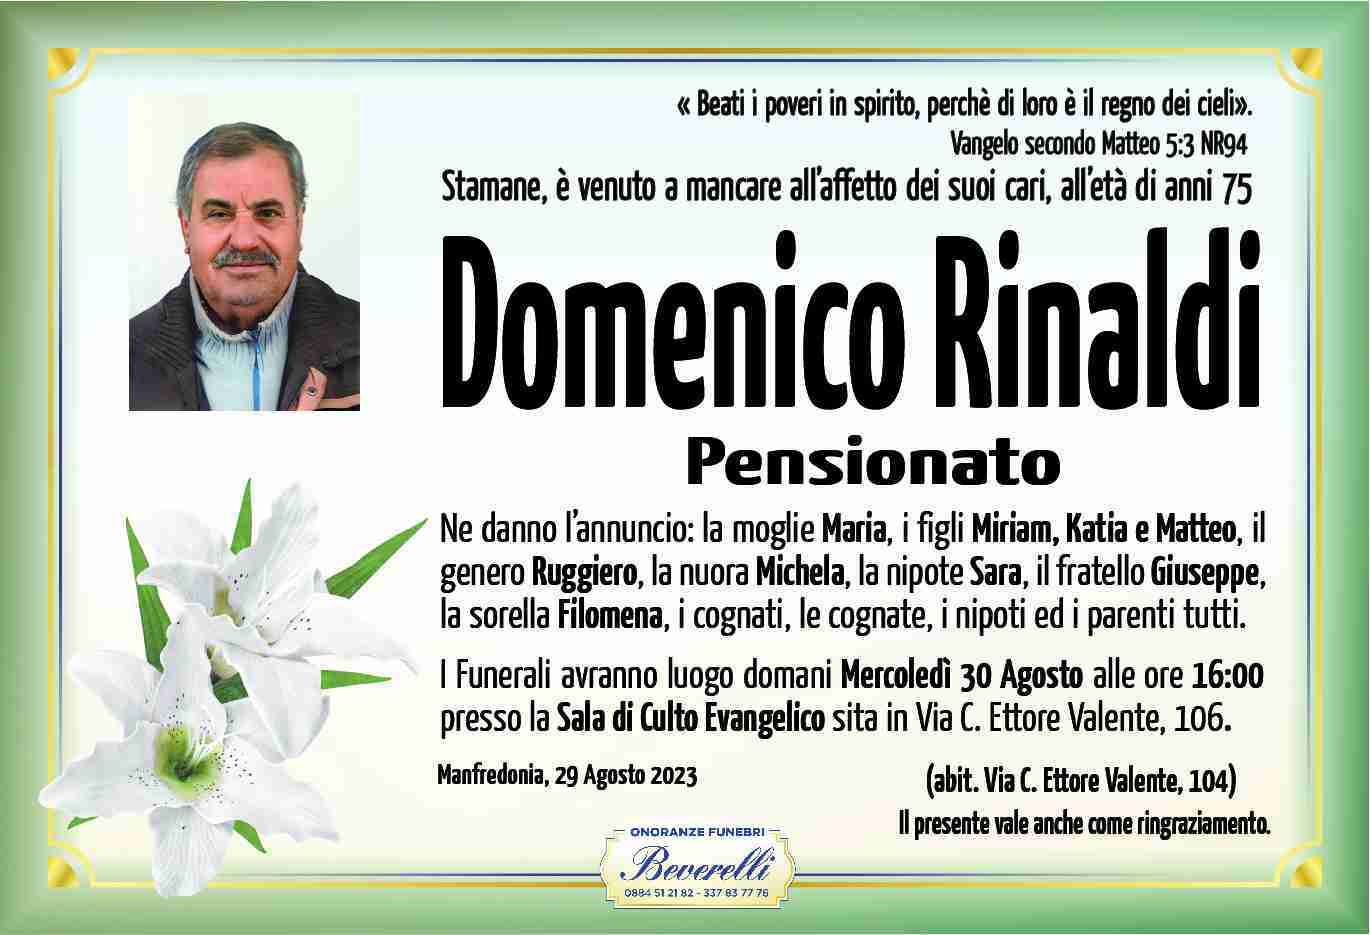 Domenico Rinaldi